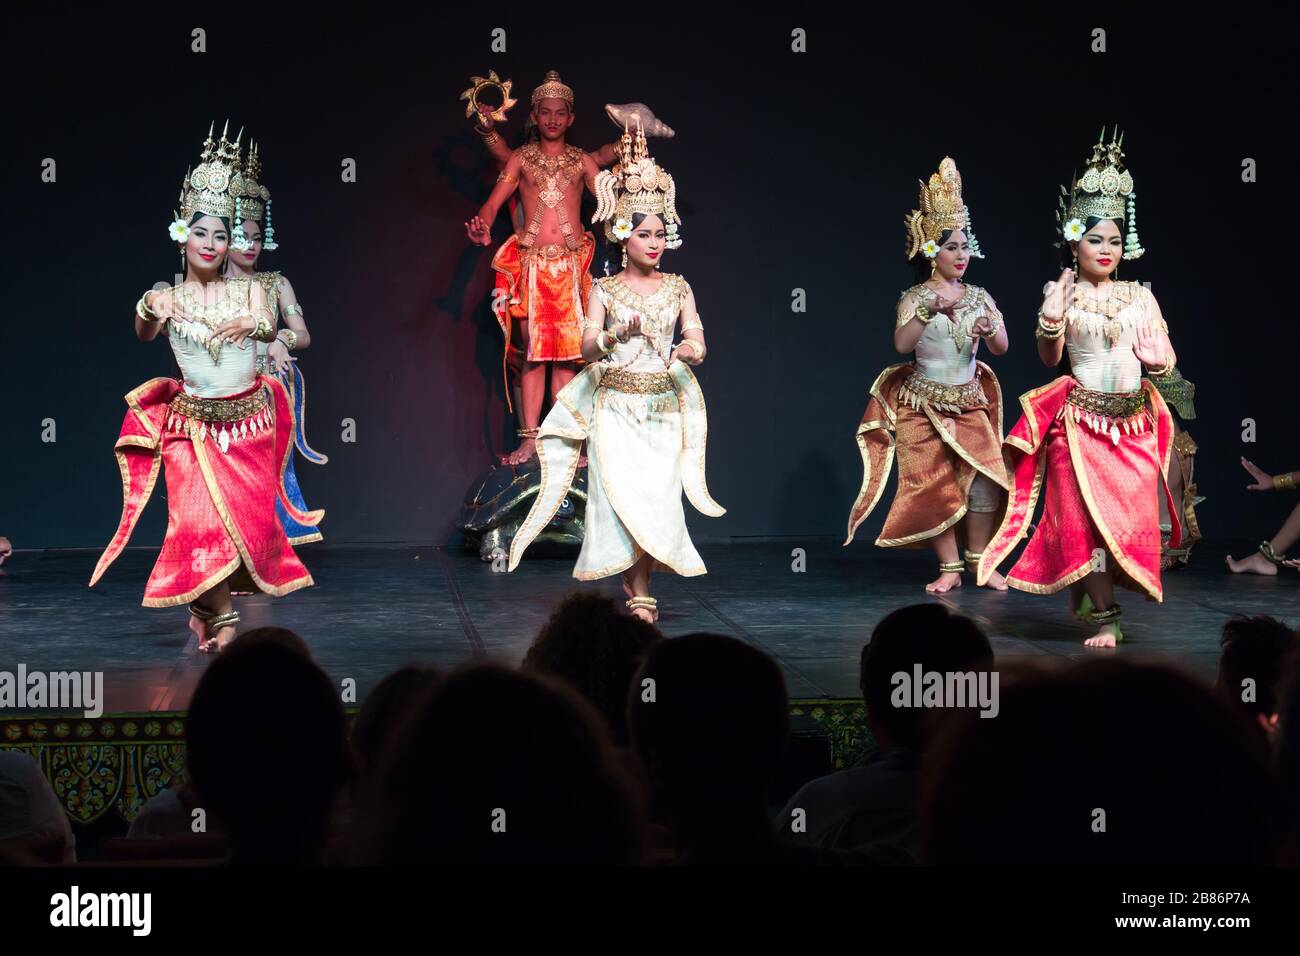 Phnom Penh, Cambodge - 19 janvier 2017 : danse APSara à Phnom Penh Cambodge Banque D'Images